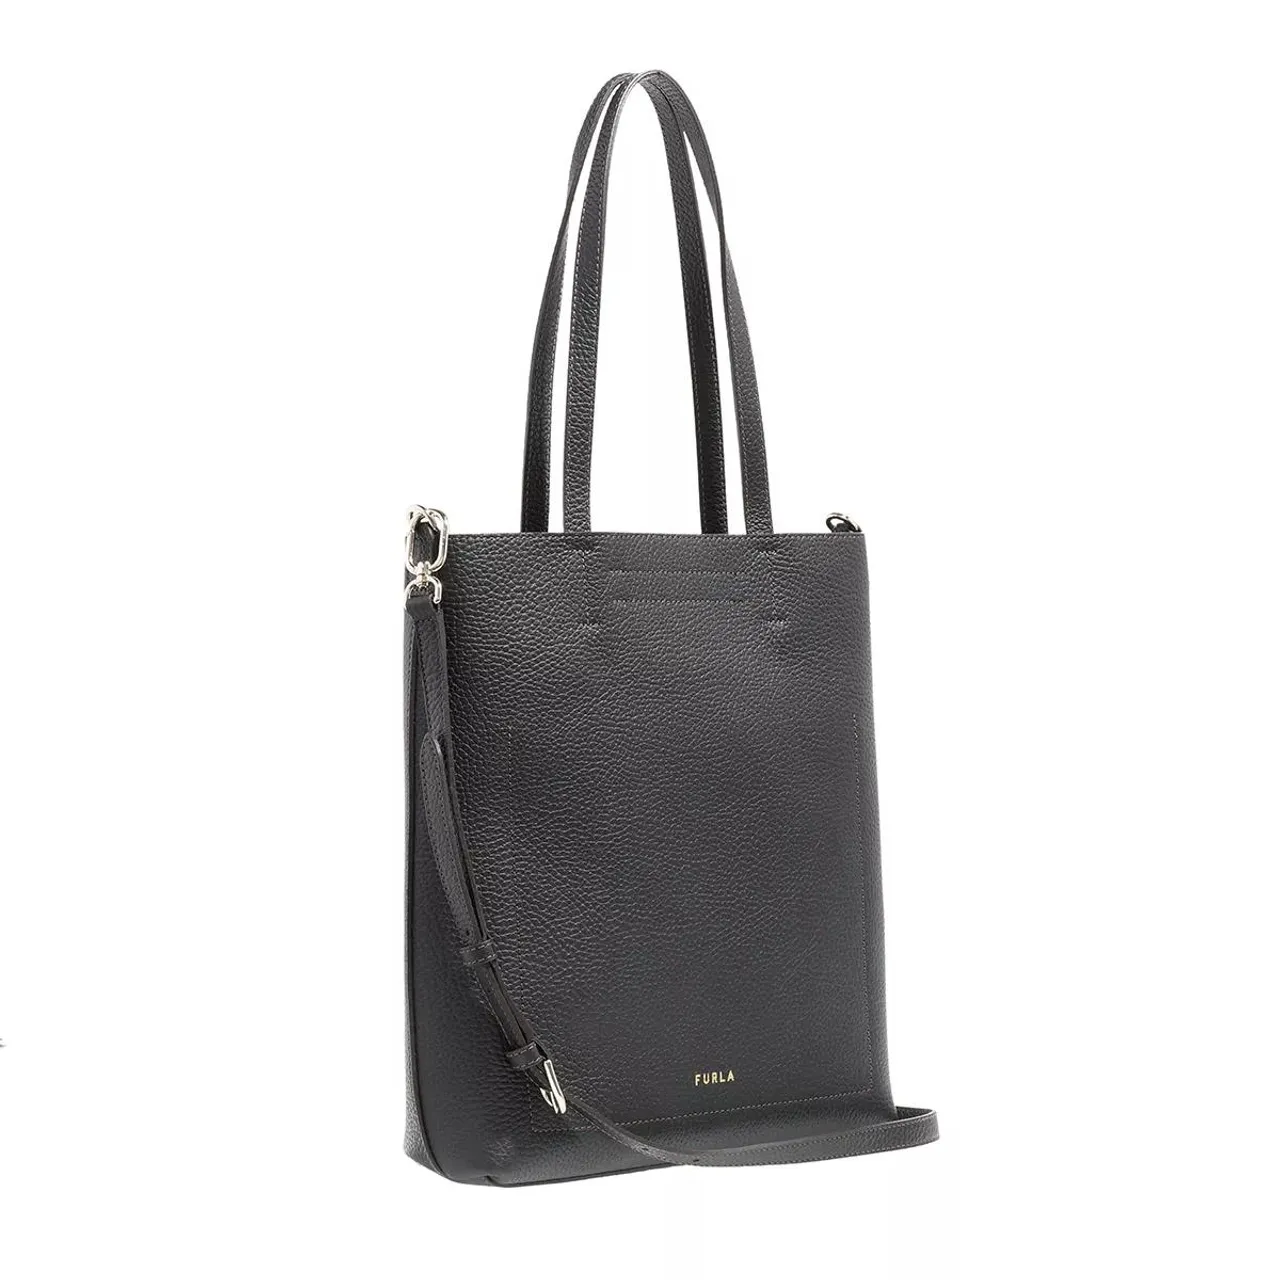 Furla Tote Bags - Furla Primula M Tote N/S - black - Tote Bags for ladies